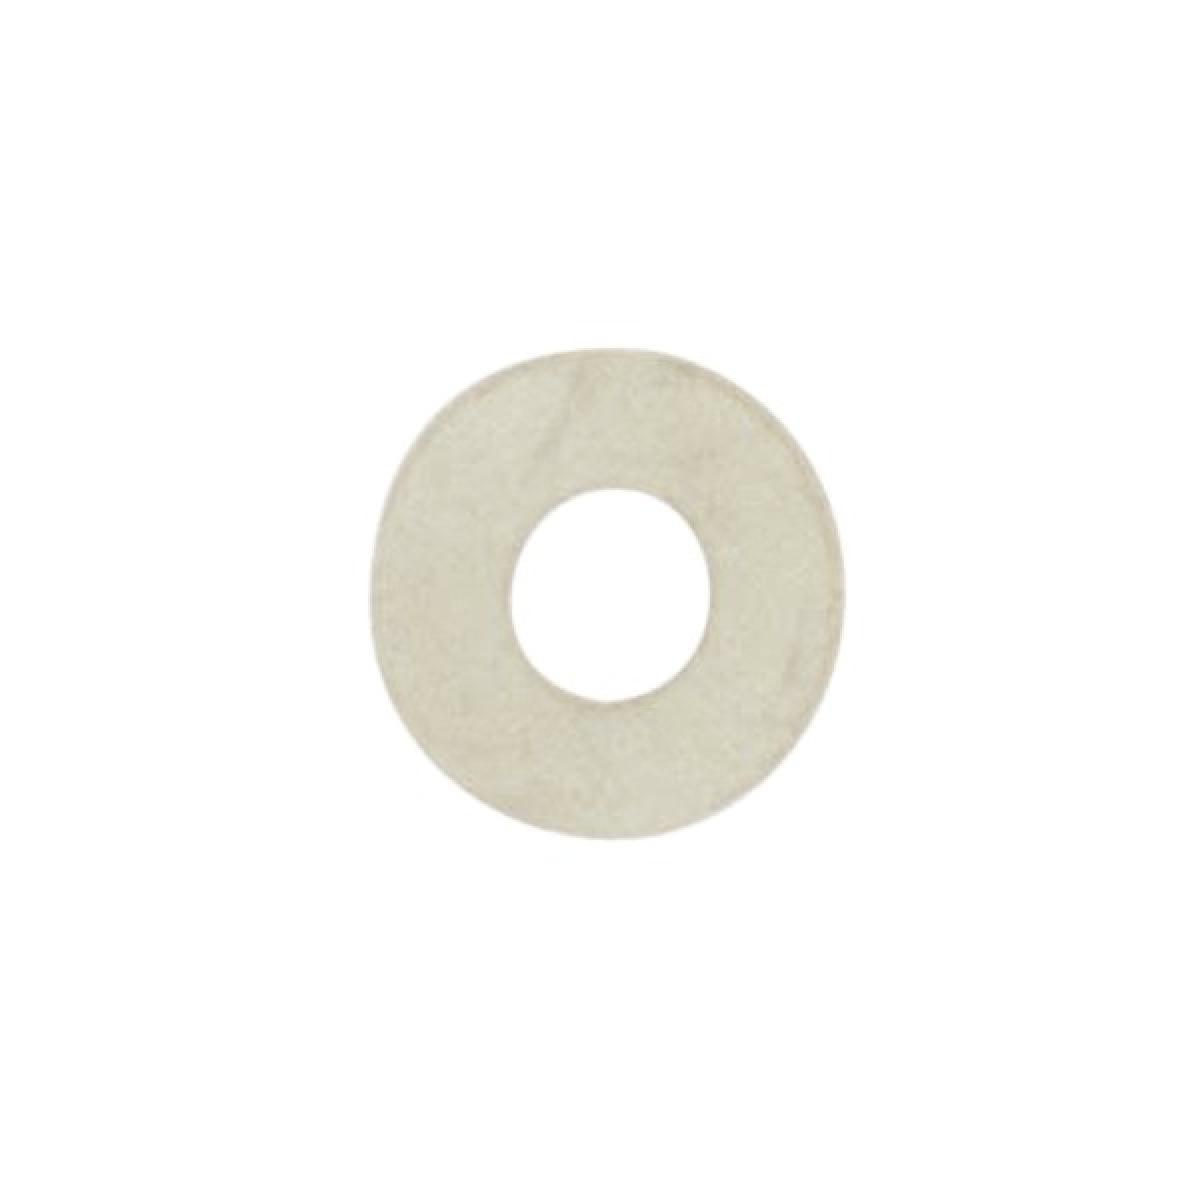 Satco 90-155 Rubber Washer 1/8 IP Slip White Finish 1-1/2" Diameter